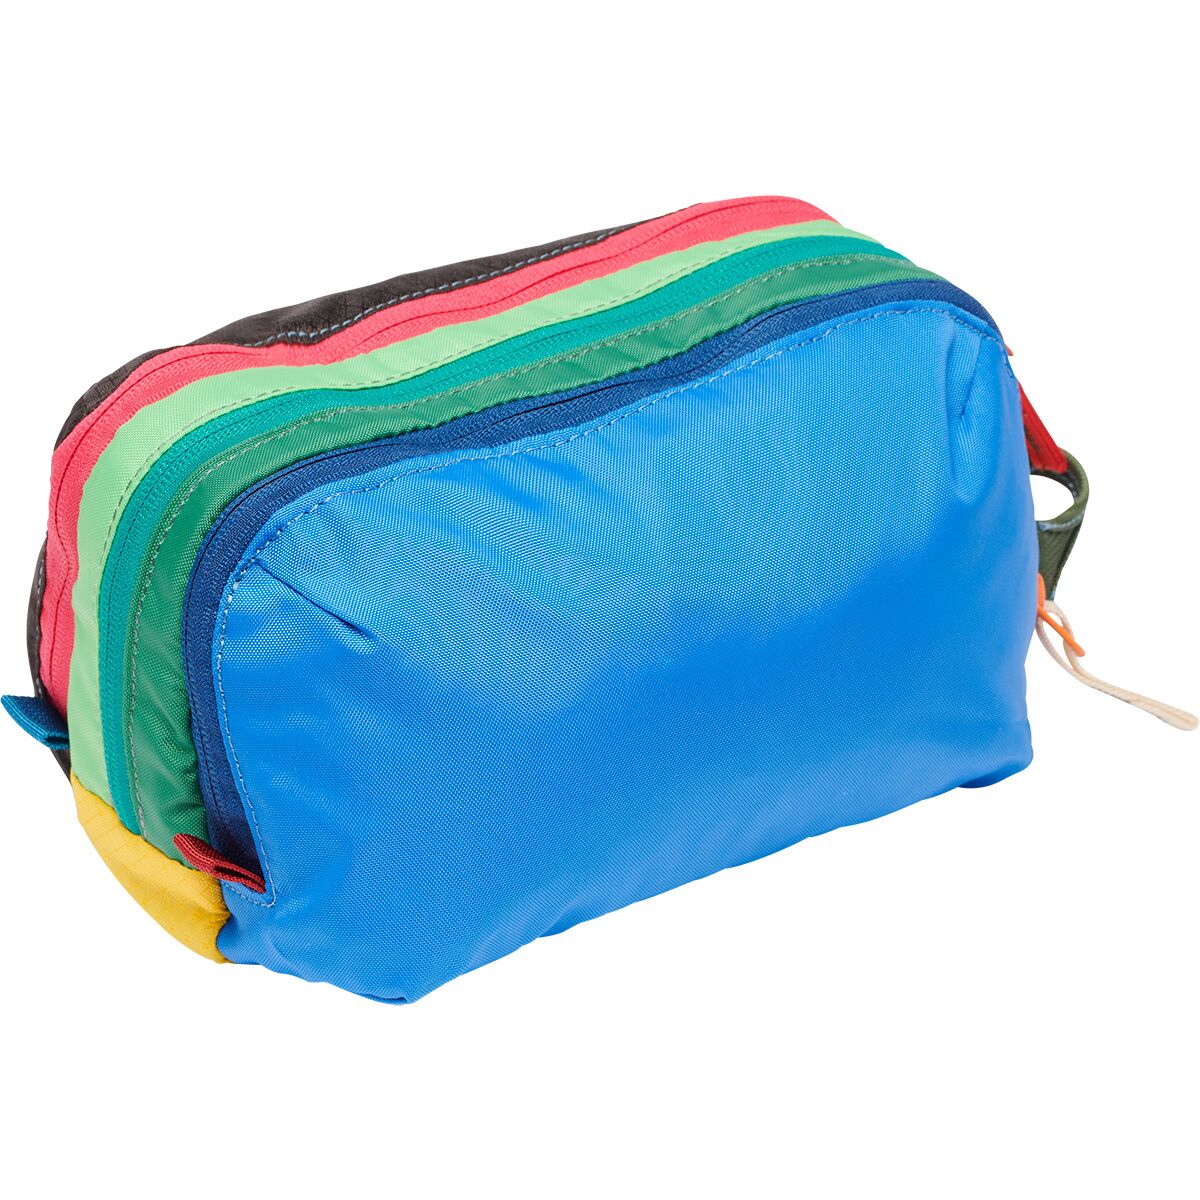 Cotopaxi Nido Del Dia Accessory Bag - Travel